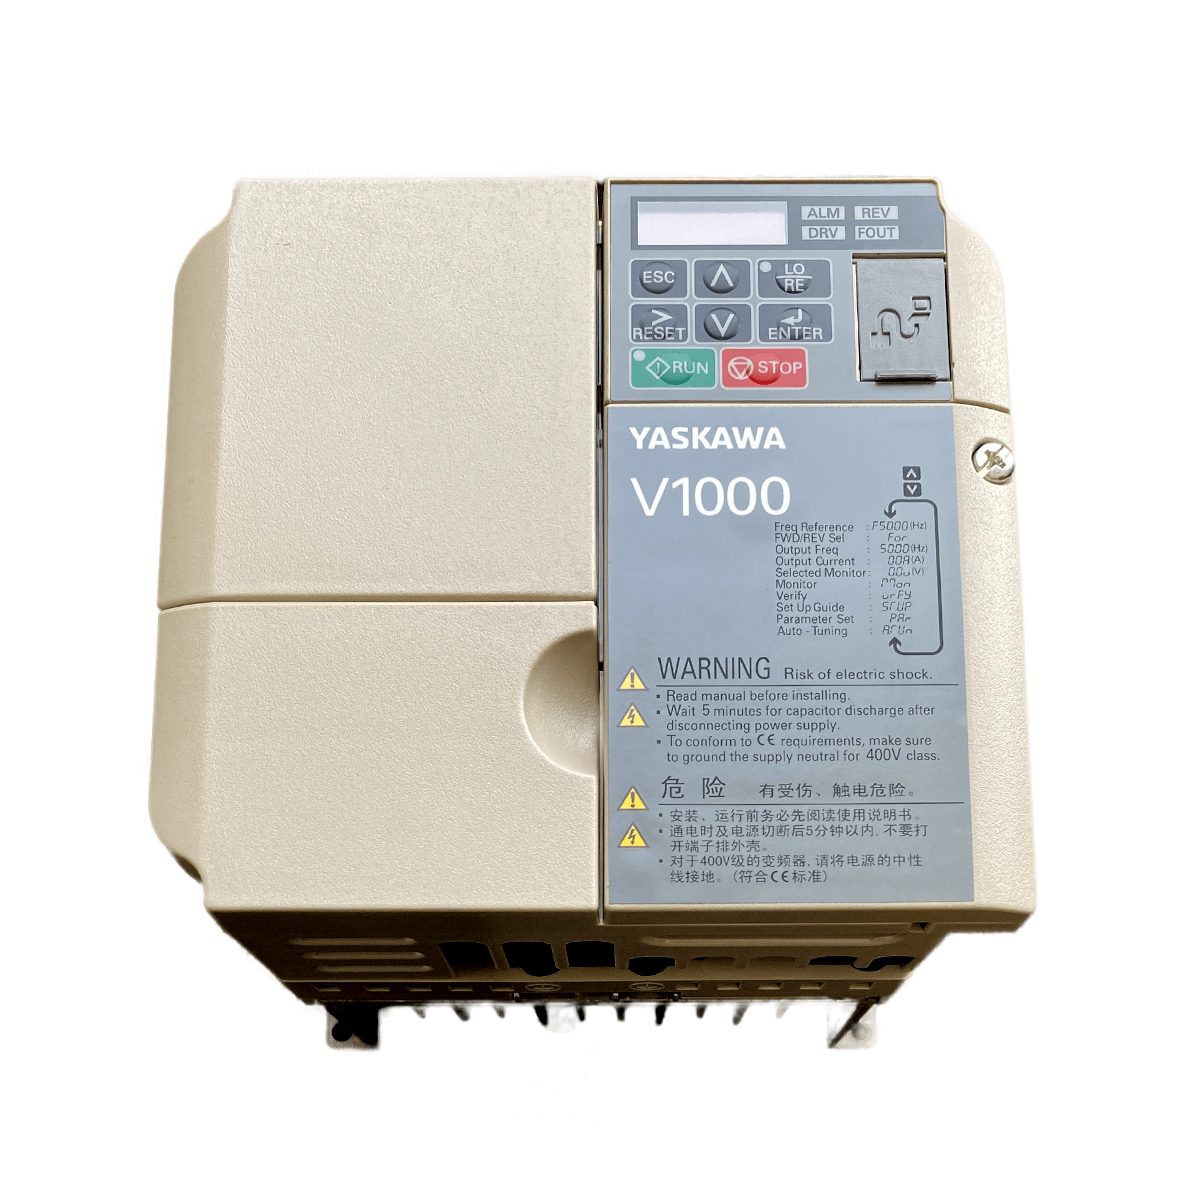  اینورتر یاسکاوا مدل V1000 کد CIMR-VB4A0011 ظرفیت 3.7 کیلووات